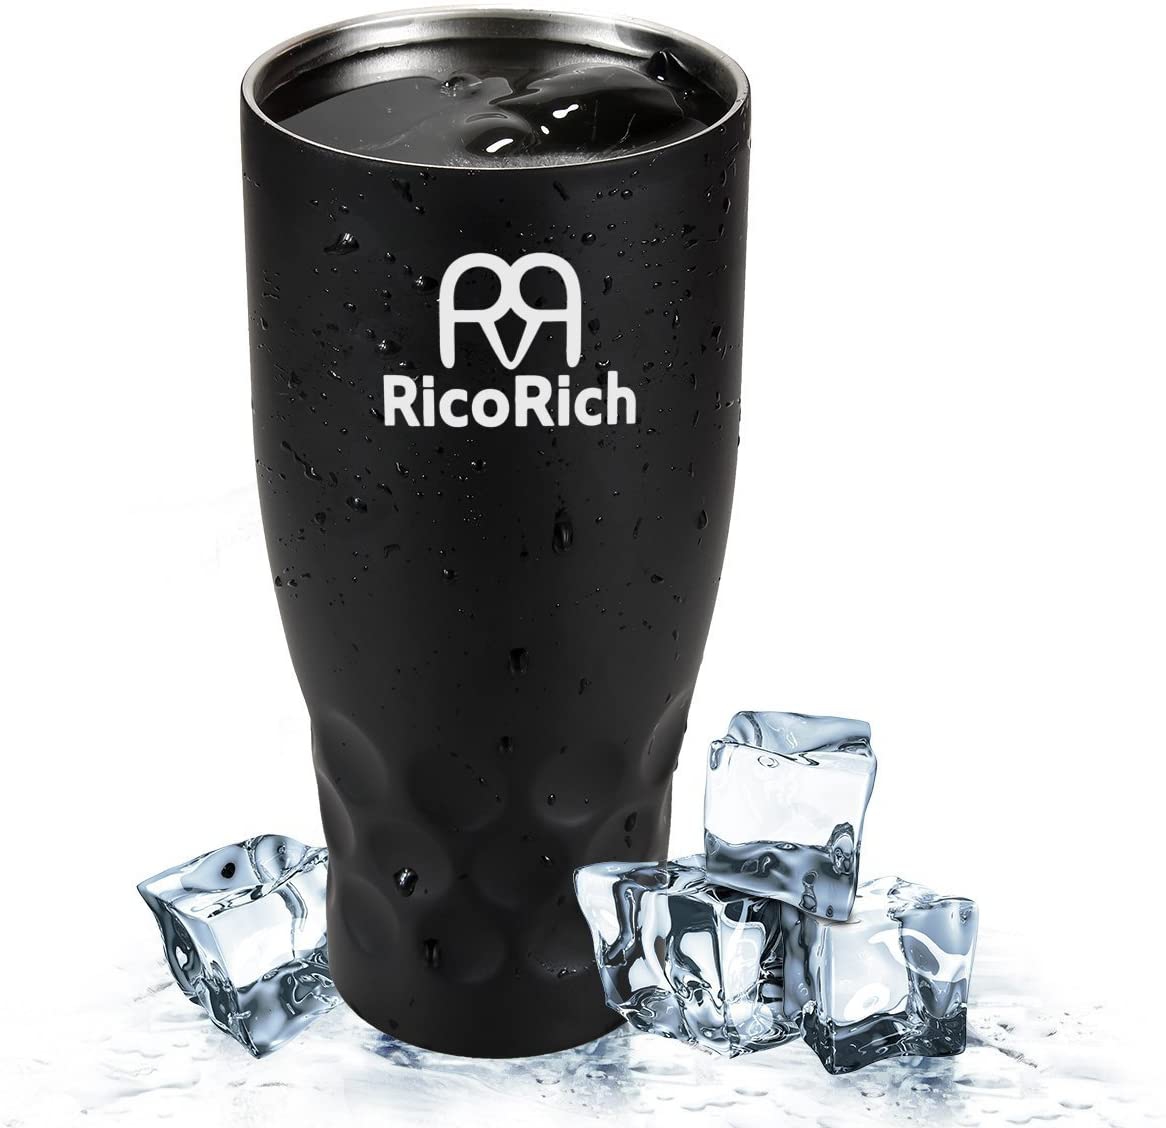 RicoRich(リコリッチ) 真空断熱タンブラー 蓋つき ステンレス 900ml RRWB11-BKの商品画像1 